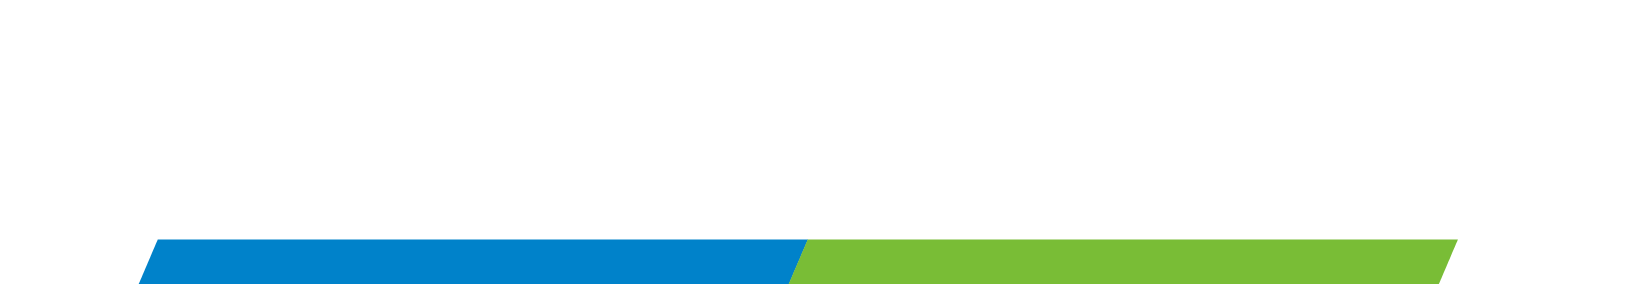 Sega Sammy Holdings logo large for dark backgrounds (transparent PNG)